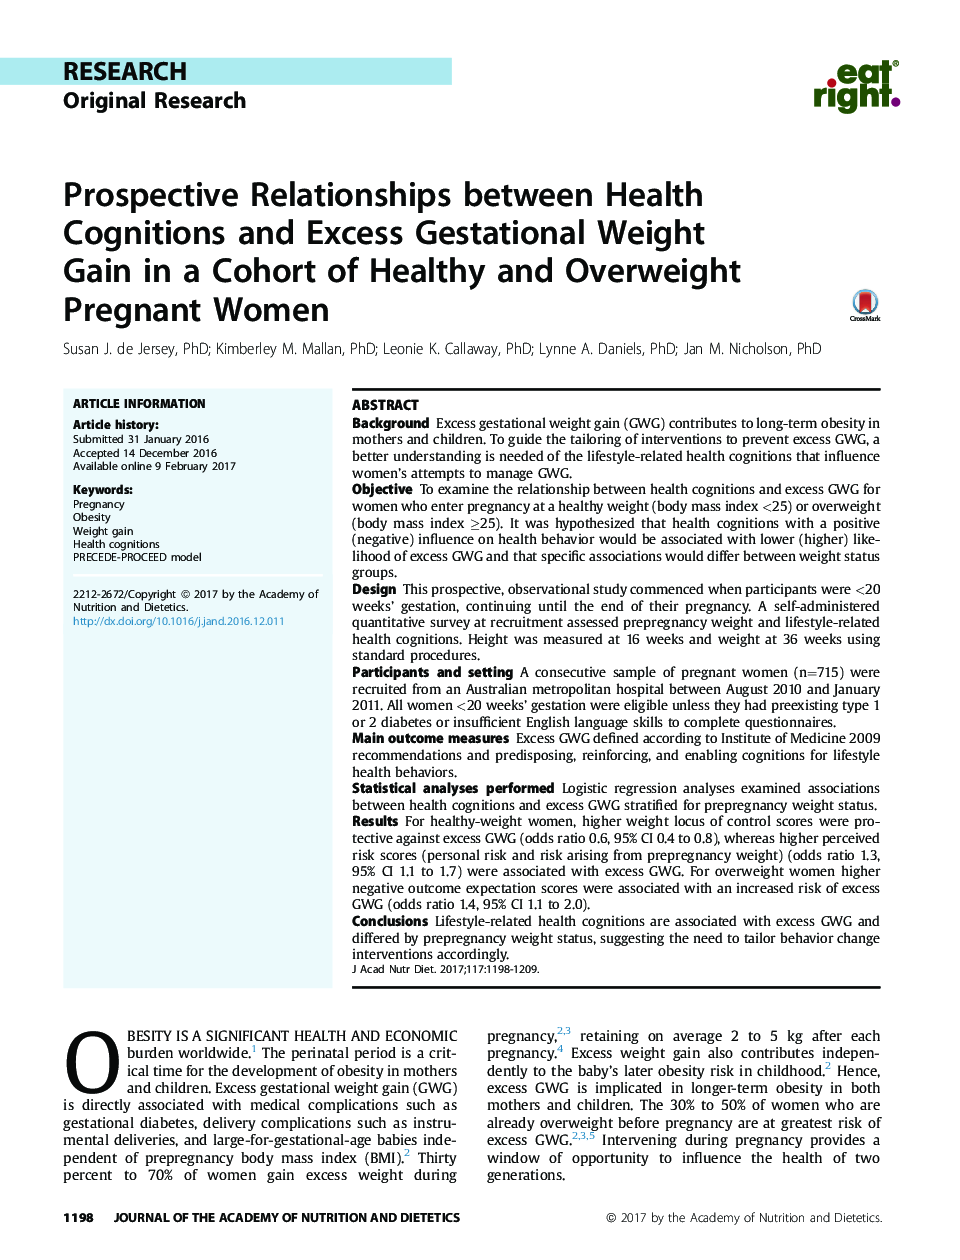 تحقیقات تحقیقاتی ارتباطات پیش بینی شده بین آگاهی های بهداشتی و افزایش وزن بیش از اندازه وزن بارداری در گروهی از زنان باردار سالم و اضافه وزن 